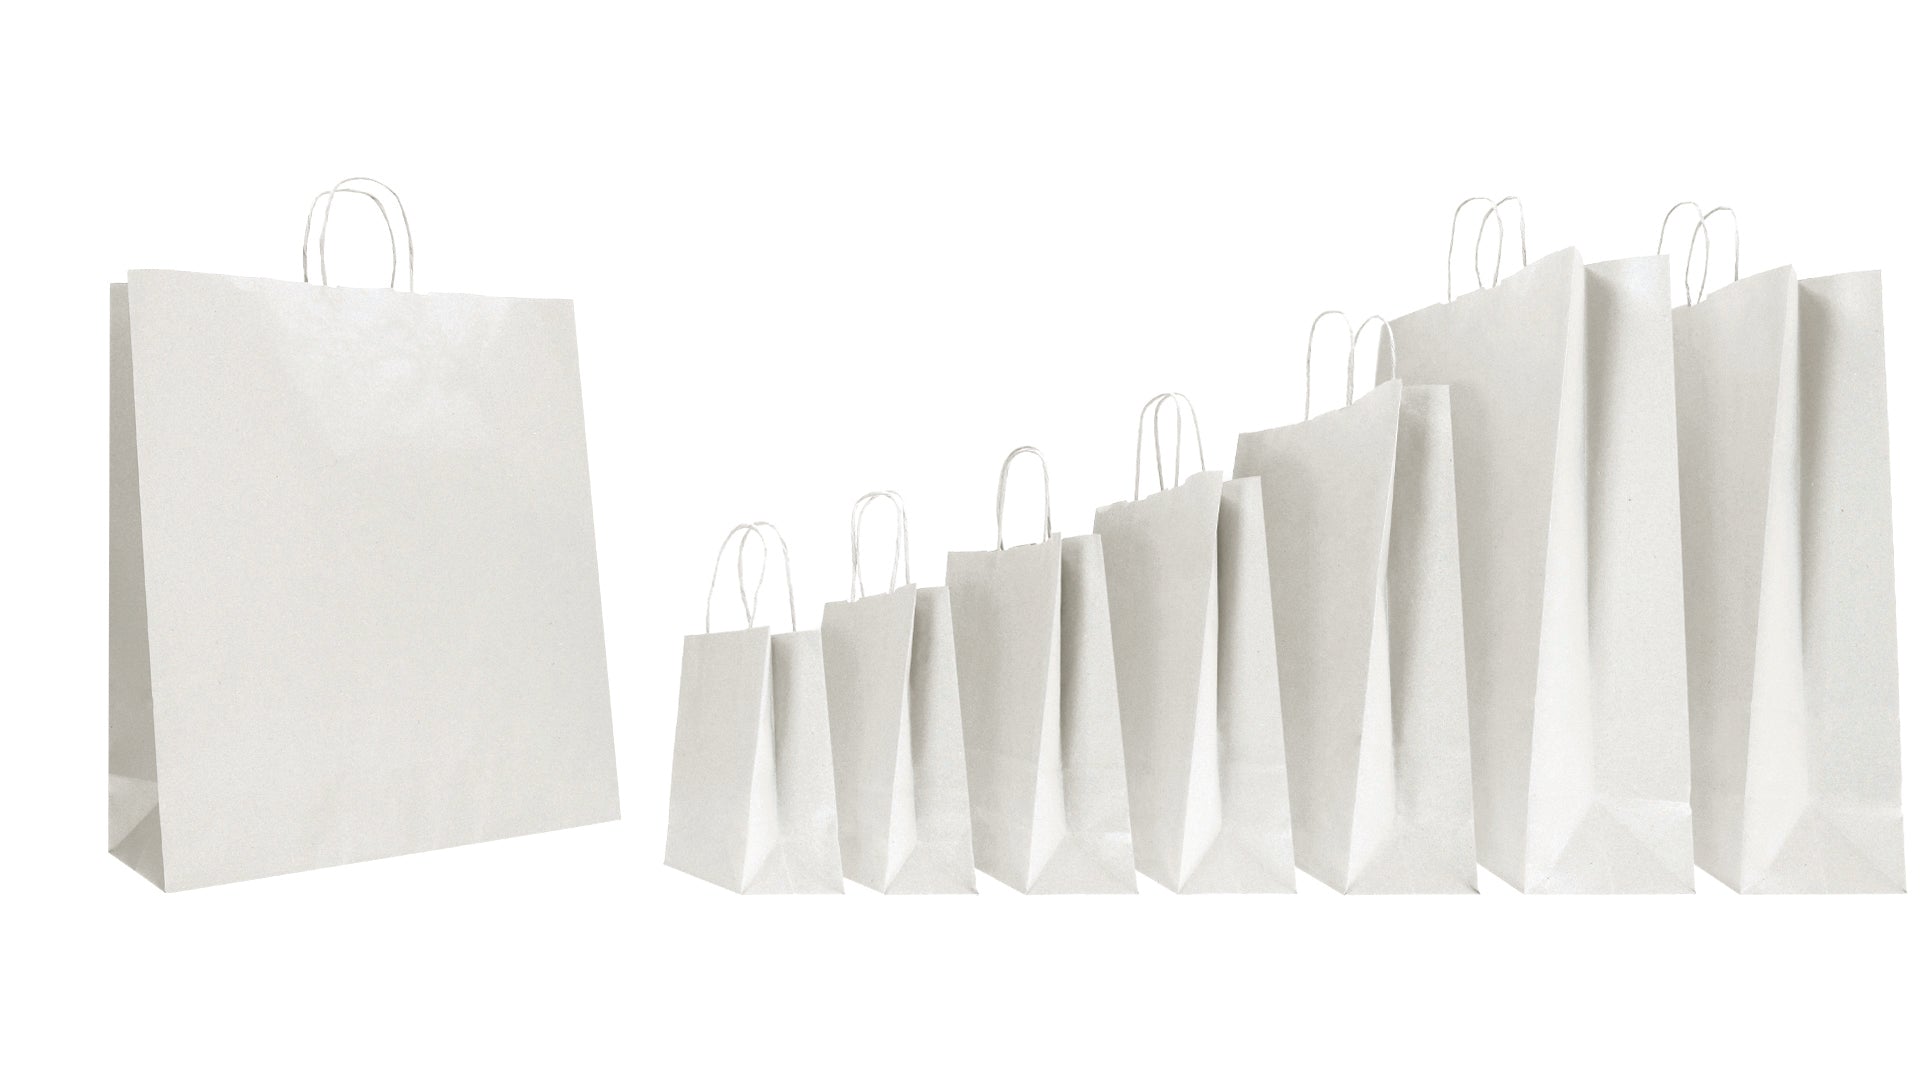 DittaDisplay Retail Solutions sac cabas kraft blanc poignées torsadées white kraft shopping bag with twisted handles Einkaufstasche Kraft weiß mit gedrehten Griffen